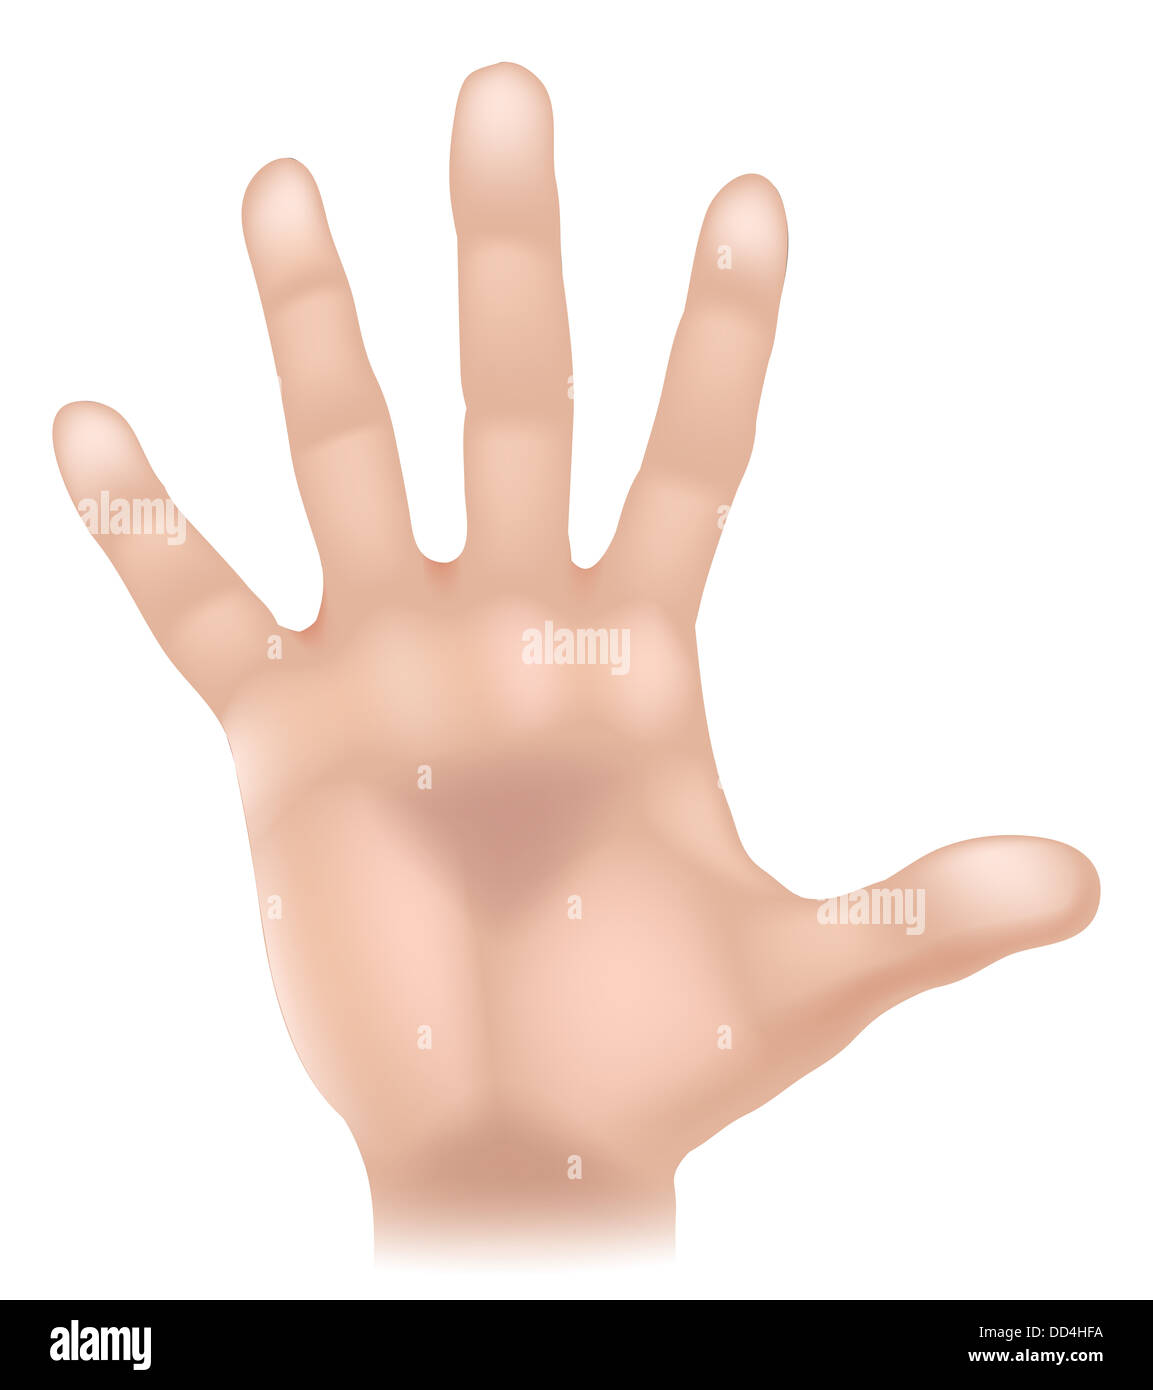 Une illustration d'une partie du corps, la main humaine pourrait représenter touch dans les cinq sens Banque D'Images